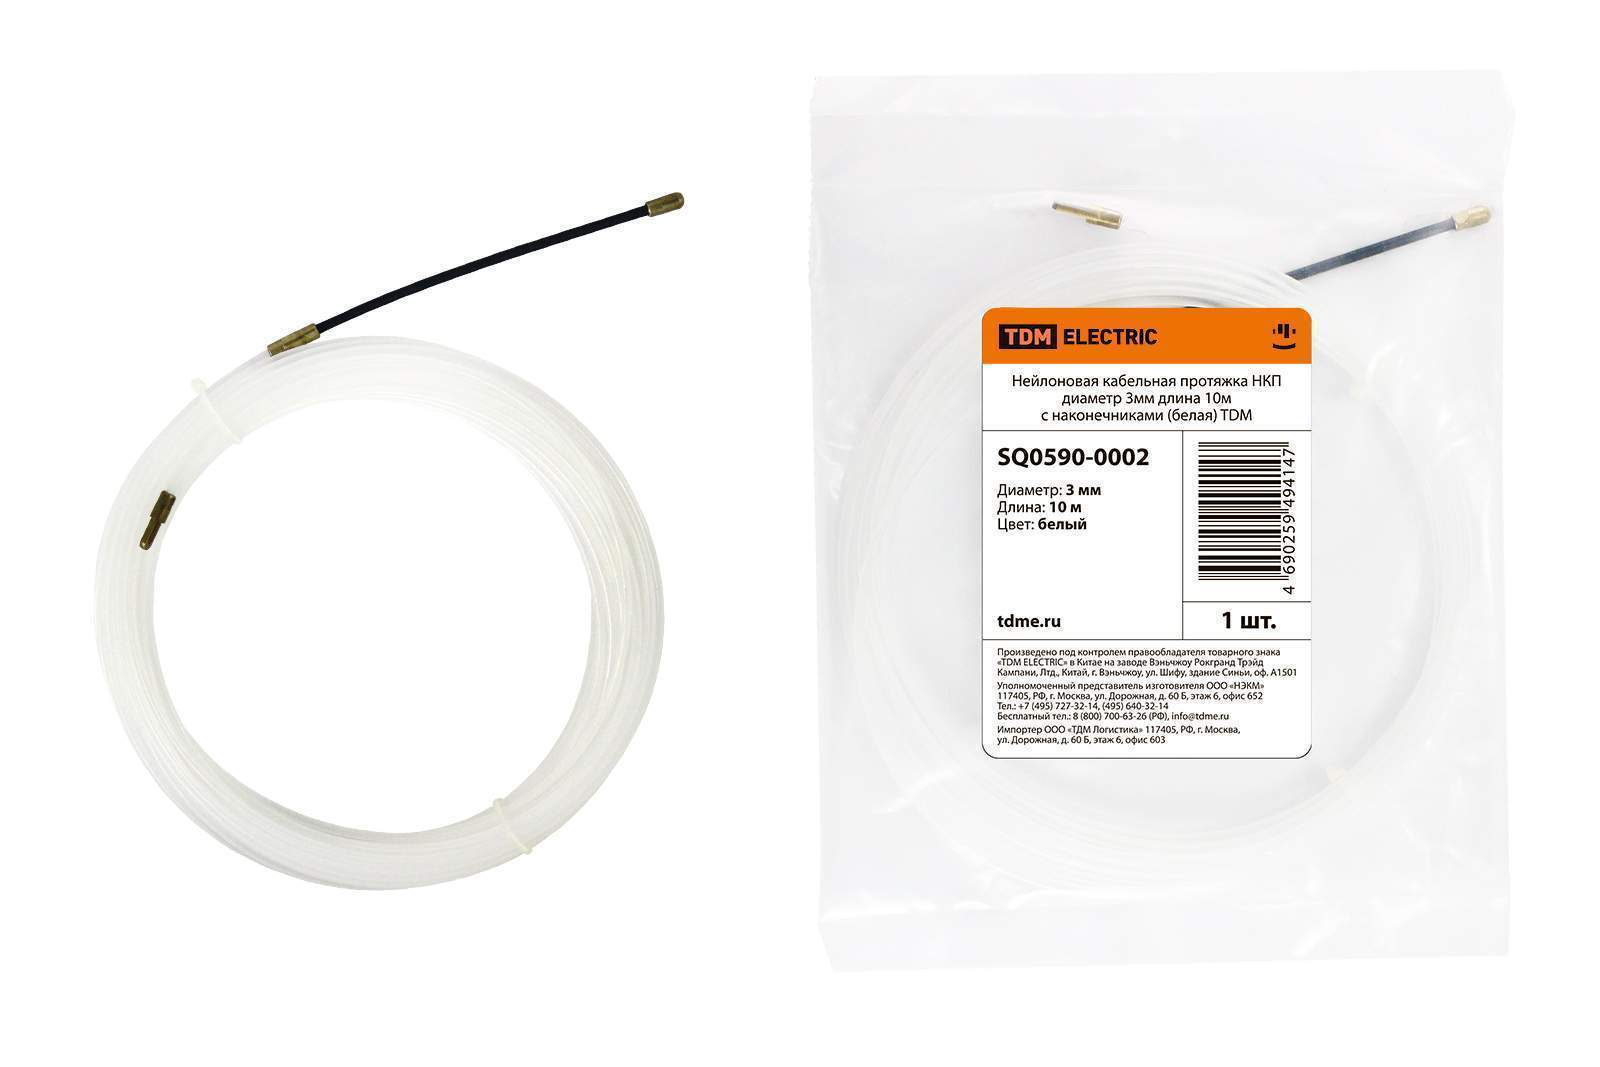 нейлоновая кабельная протяжка нкп диаметр 3мм длина 10м с наконечниками (белая) tdm от BTSprom.by